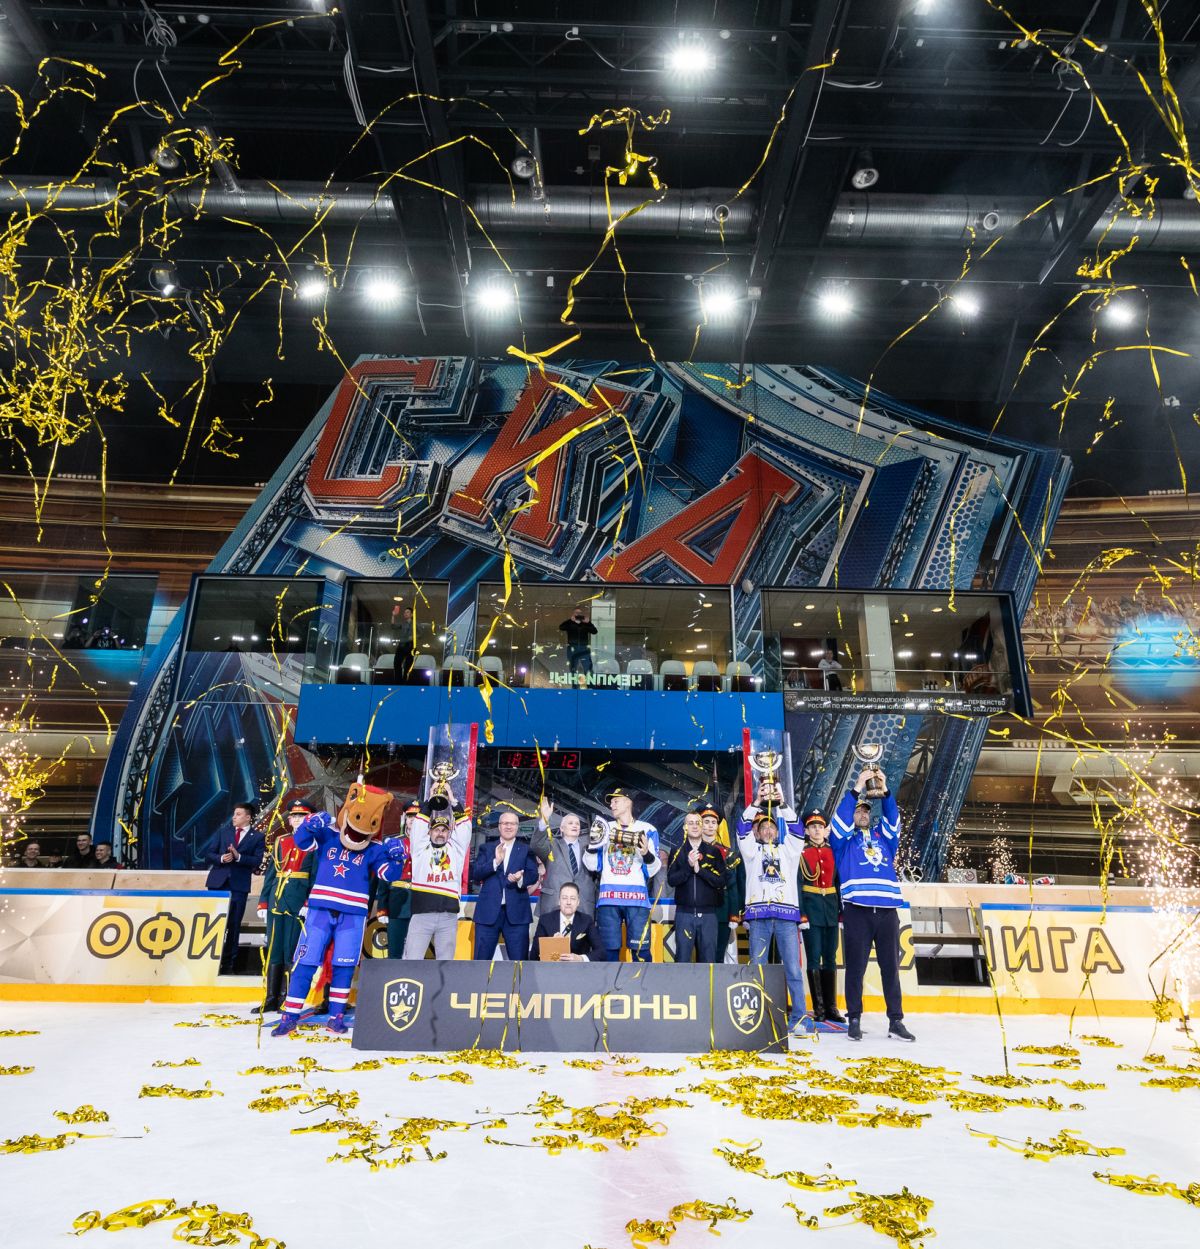 Известны чемпионы Офицерской Хоккейной Лиги регулярного чемпионата Санкт-Петербурга сезона 2022/2023!